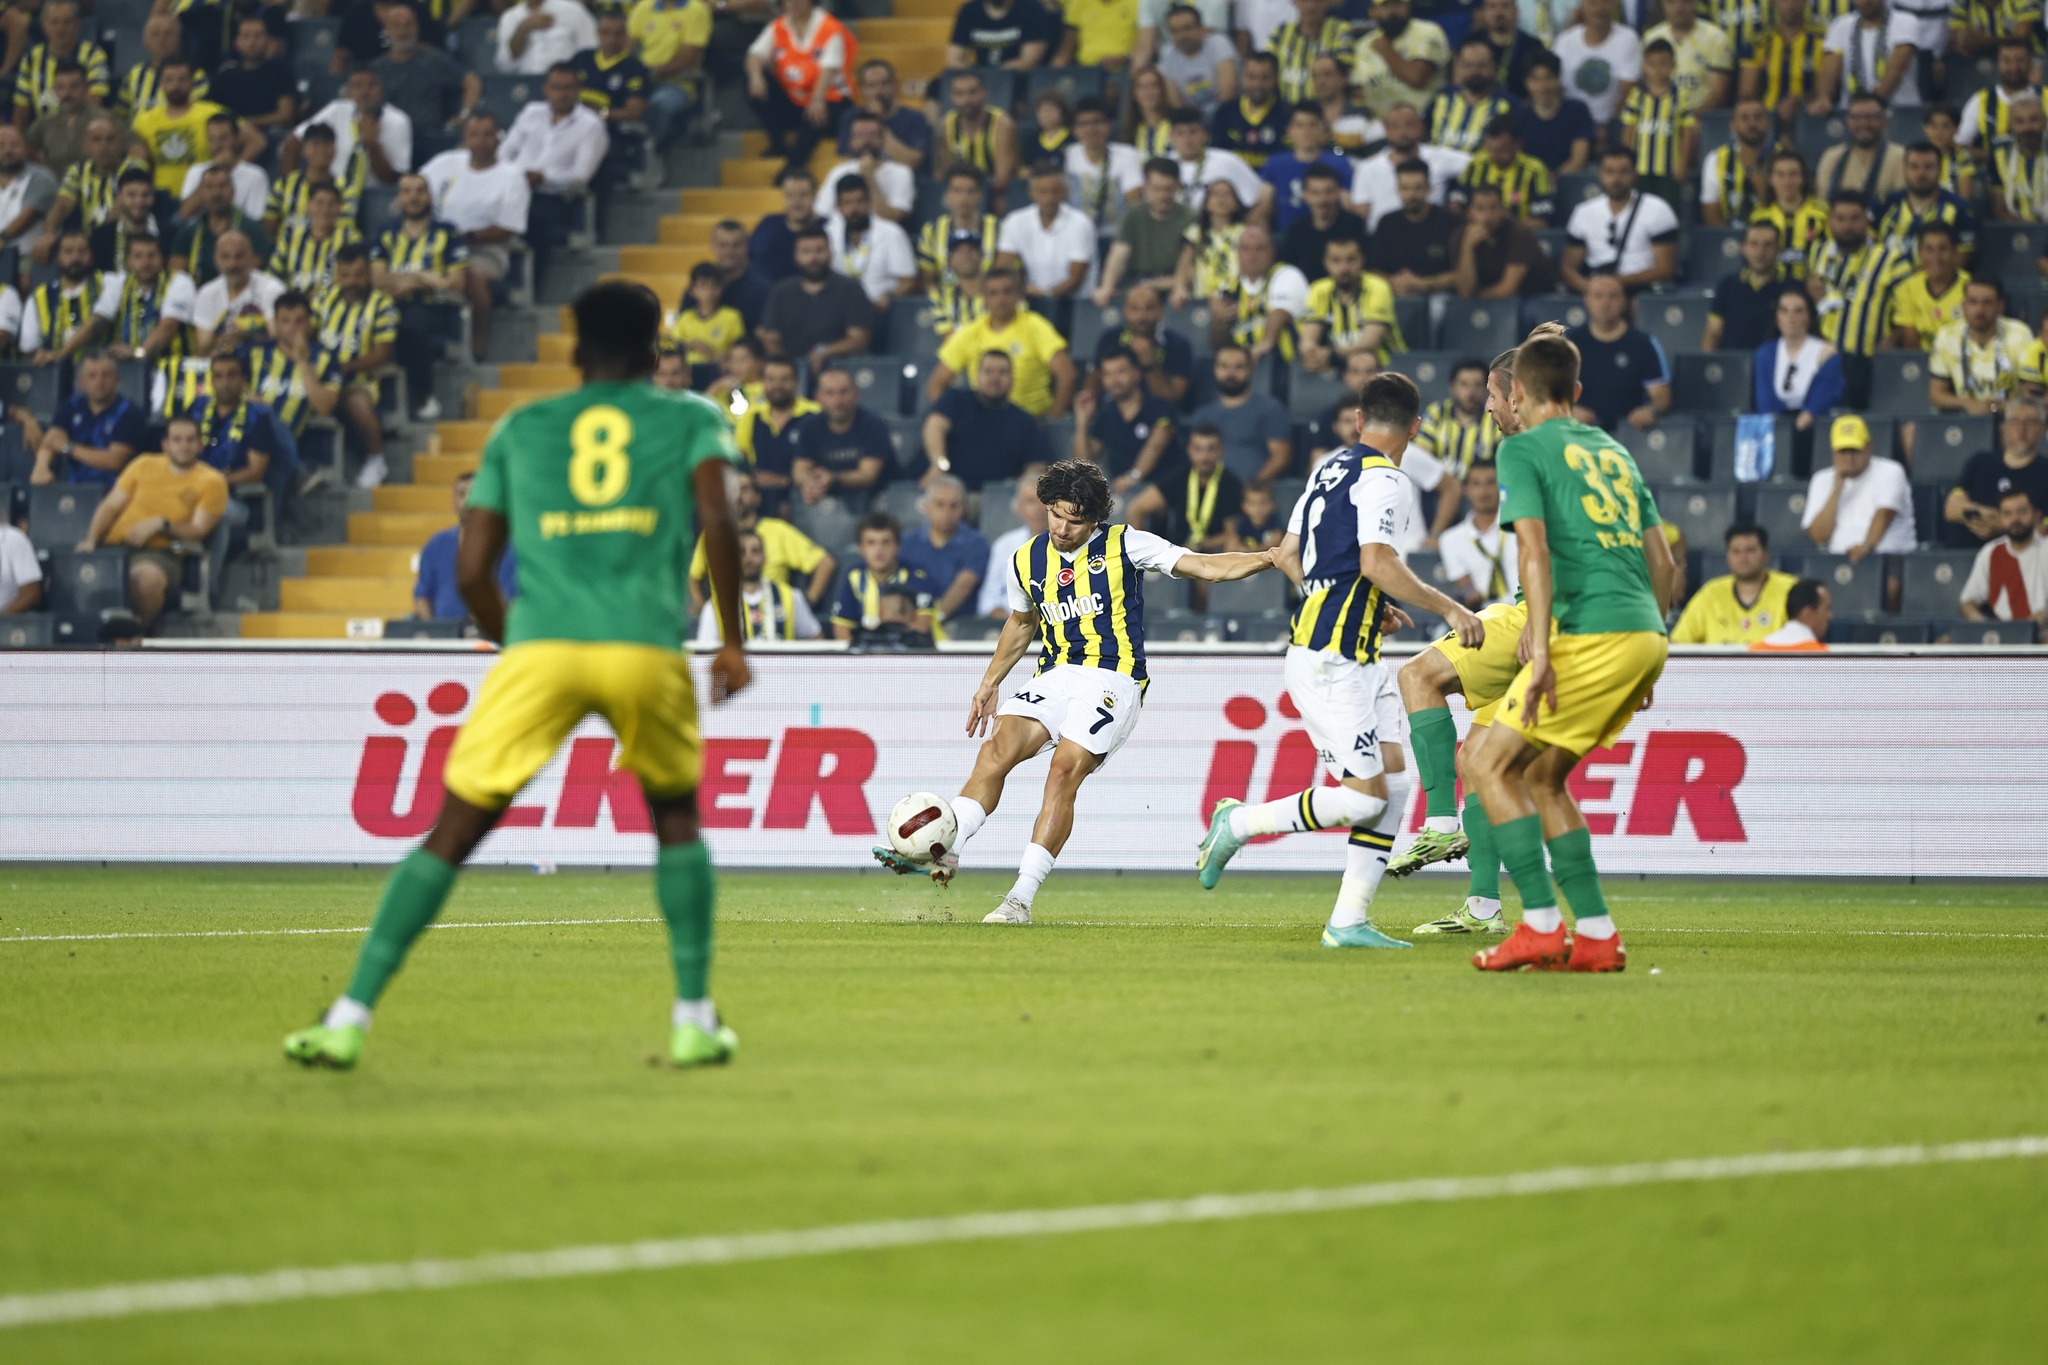 Fenerbahçe 5 Yıldızlı Formayla Çıktığı, UEFA Avrupa Konferans Ligi İlk Maçında Zimbru’yu 5-0 Mağlup Etti